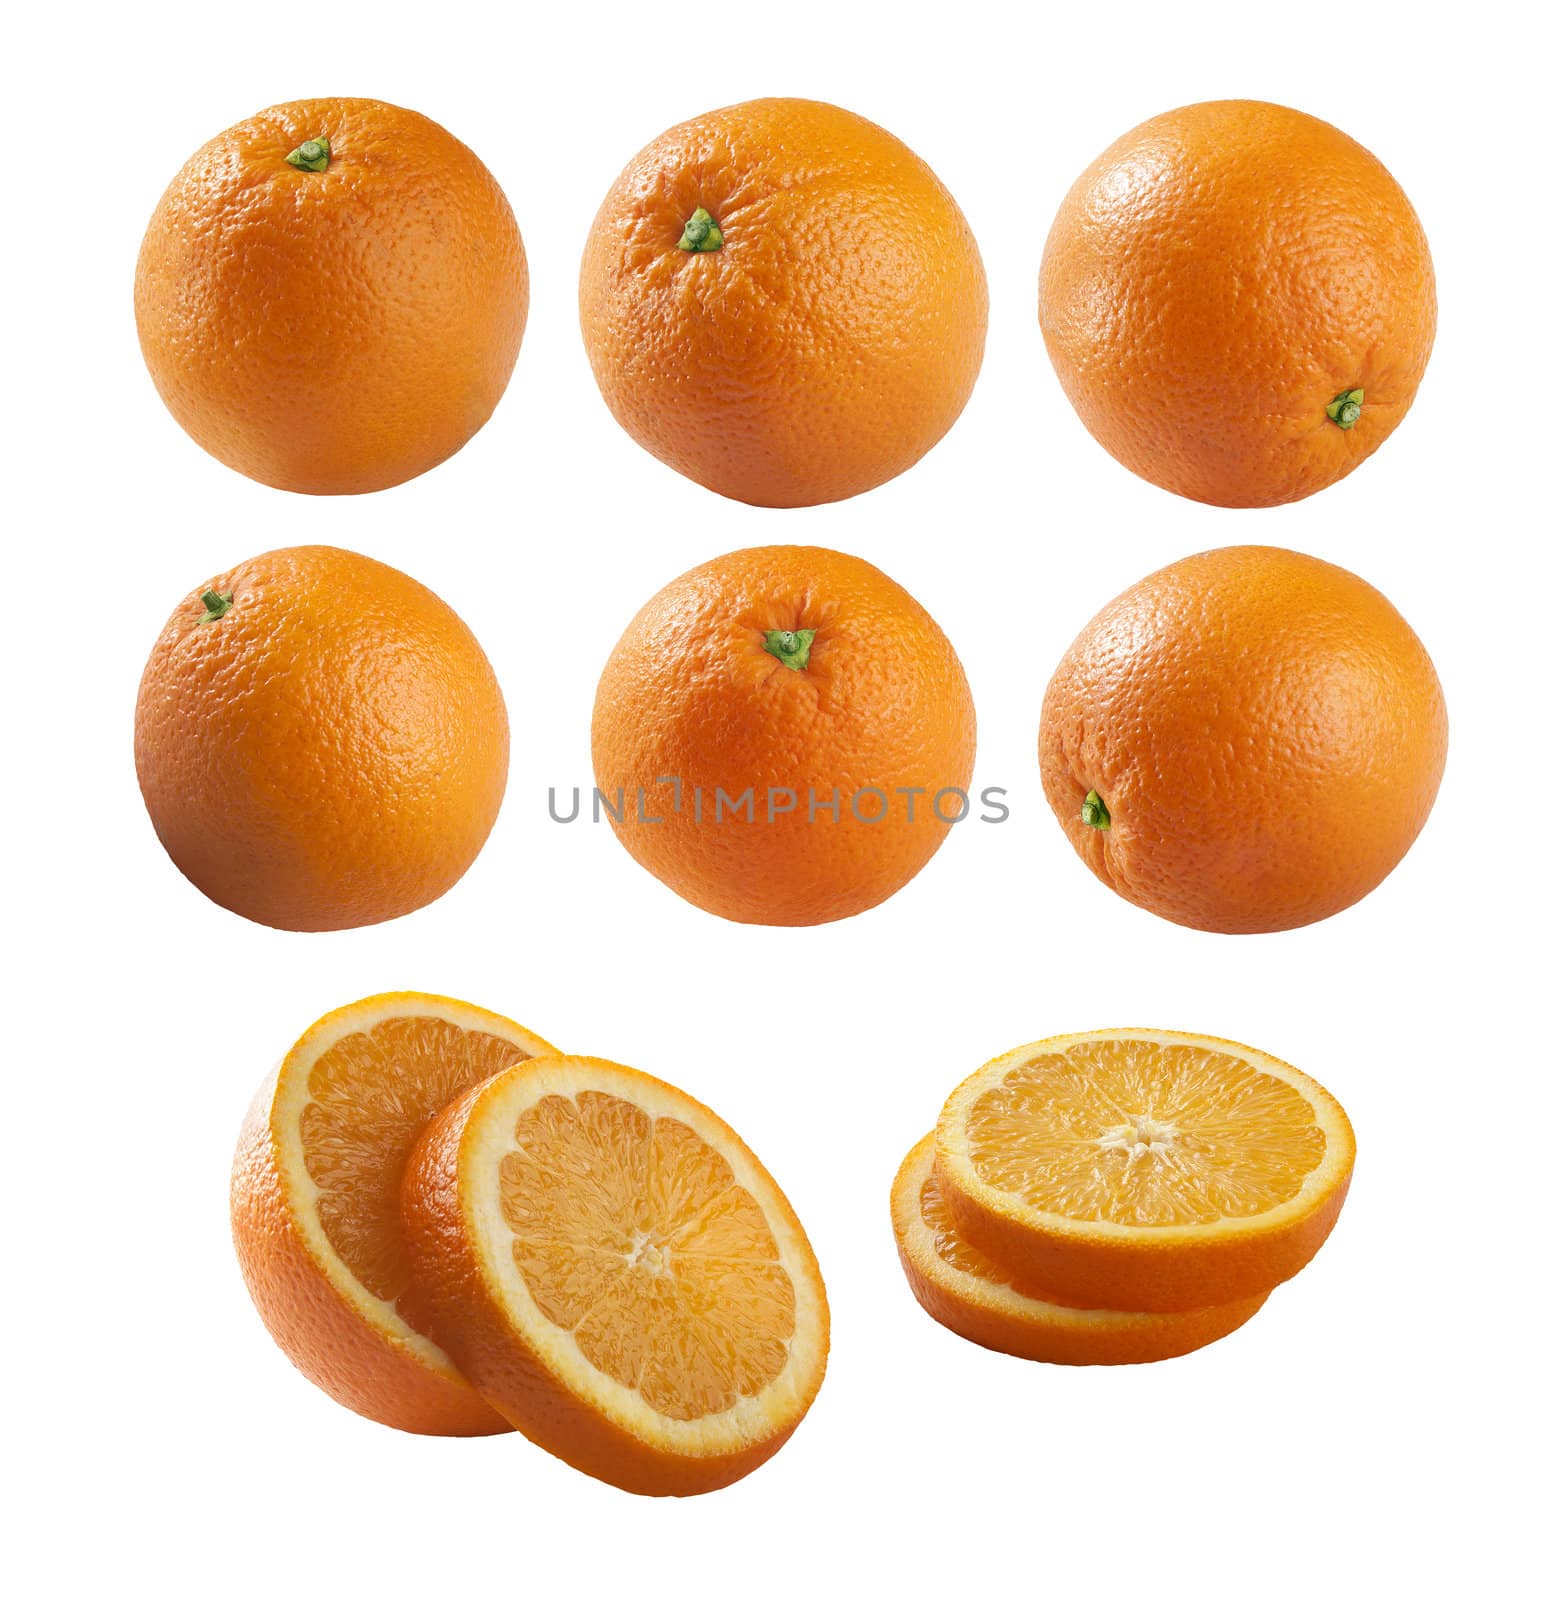 Oranges by Angorius